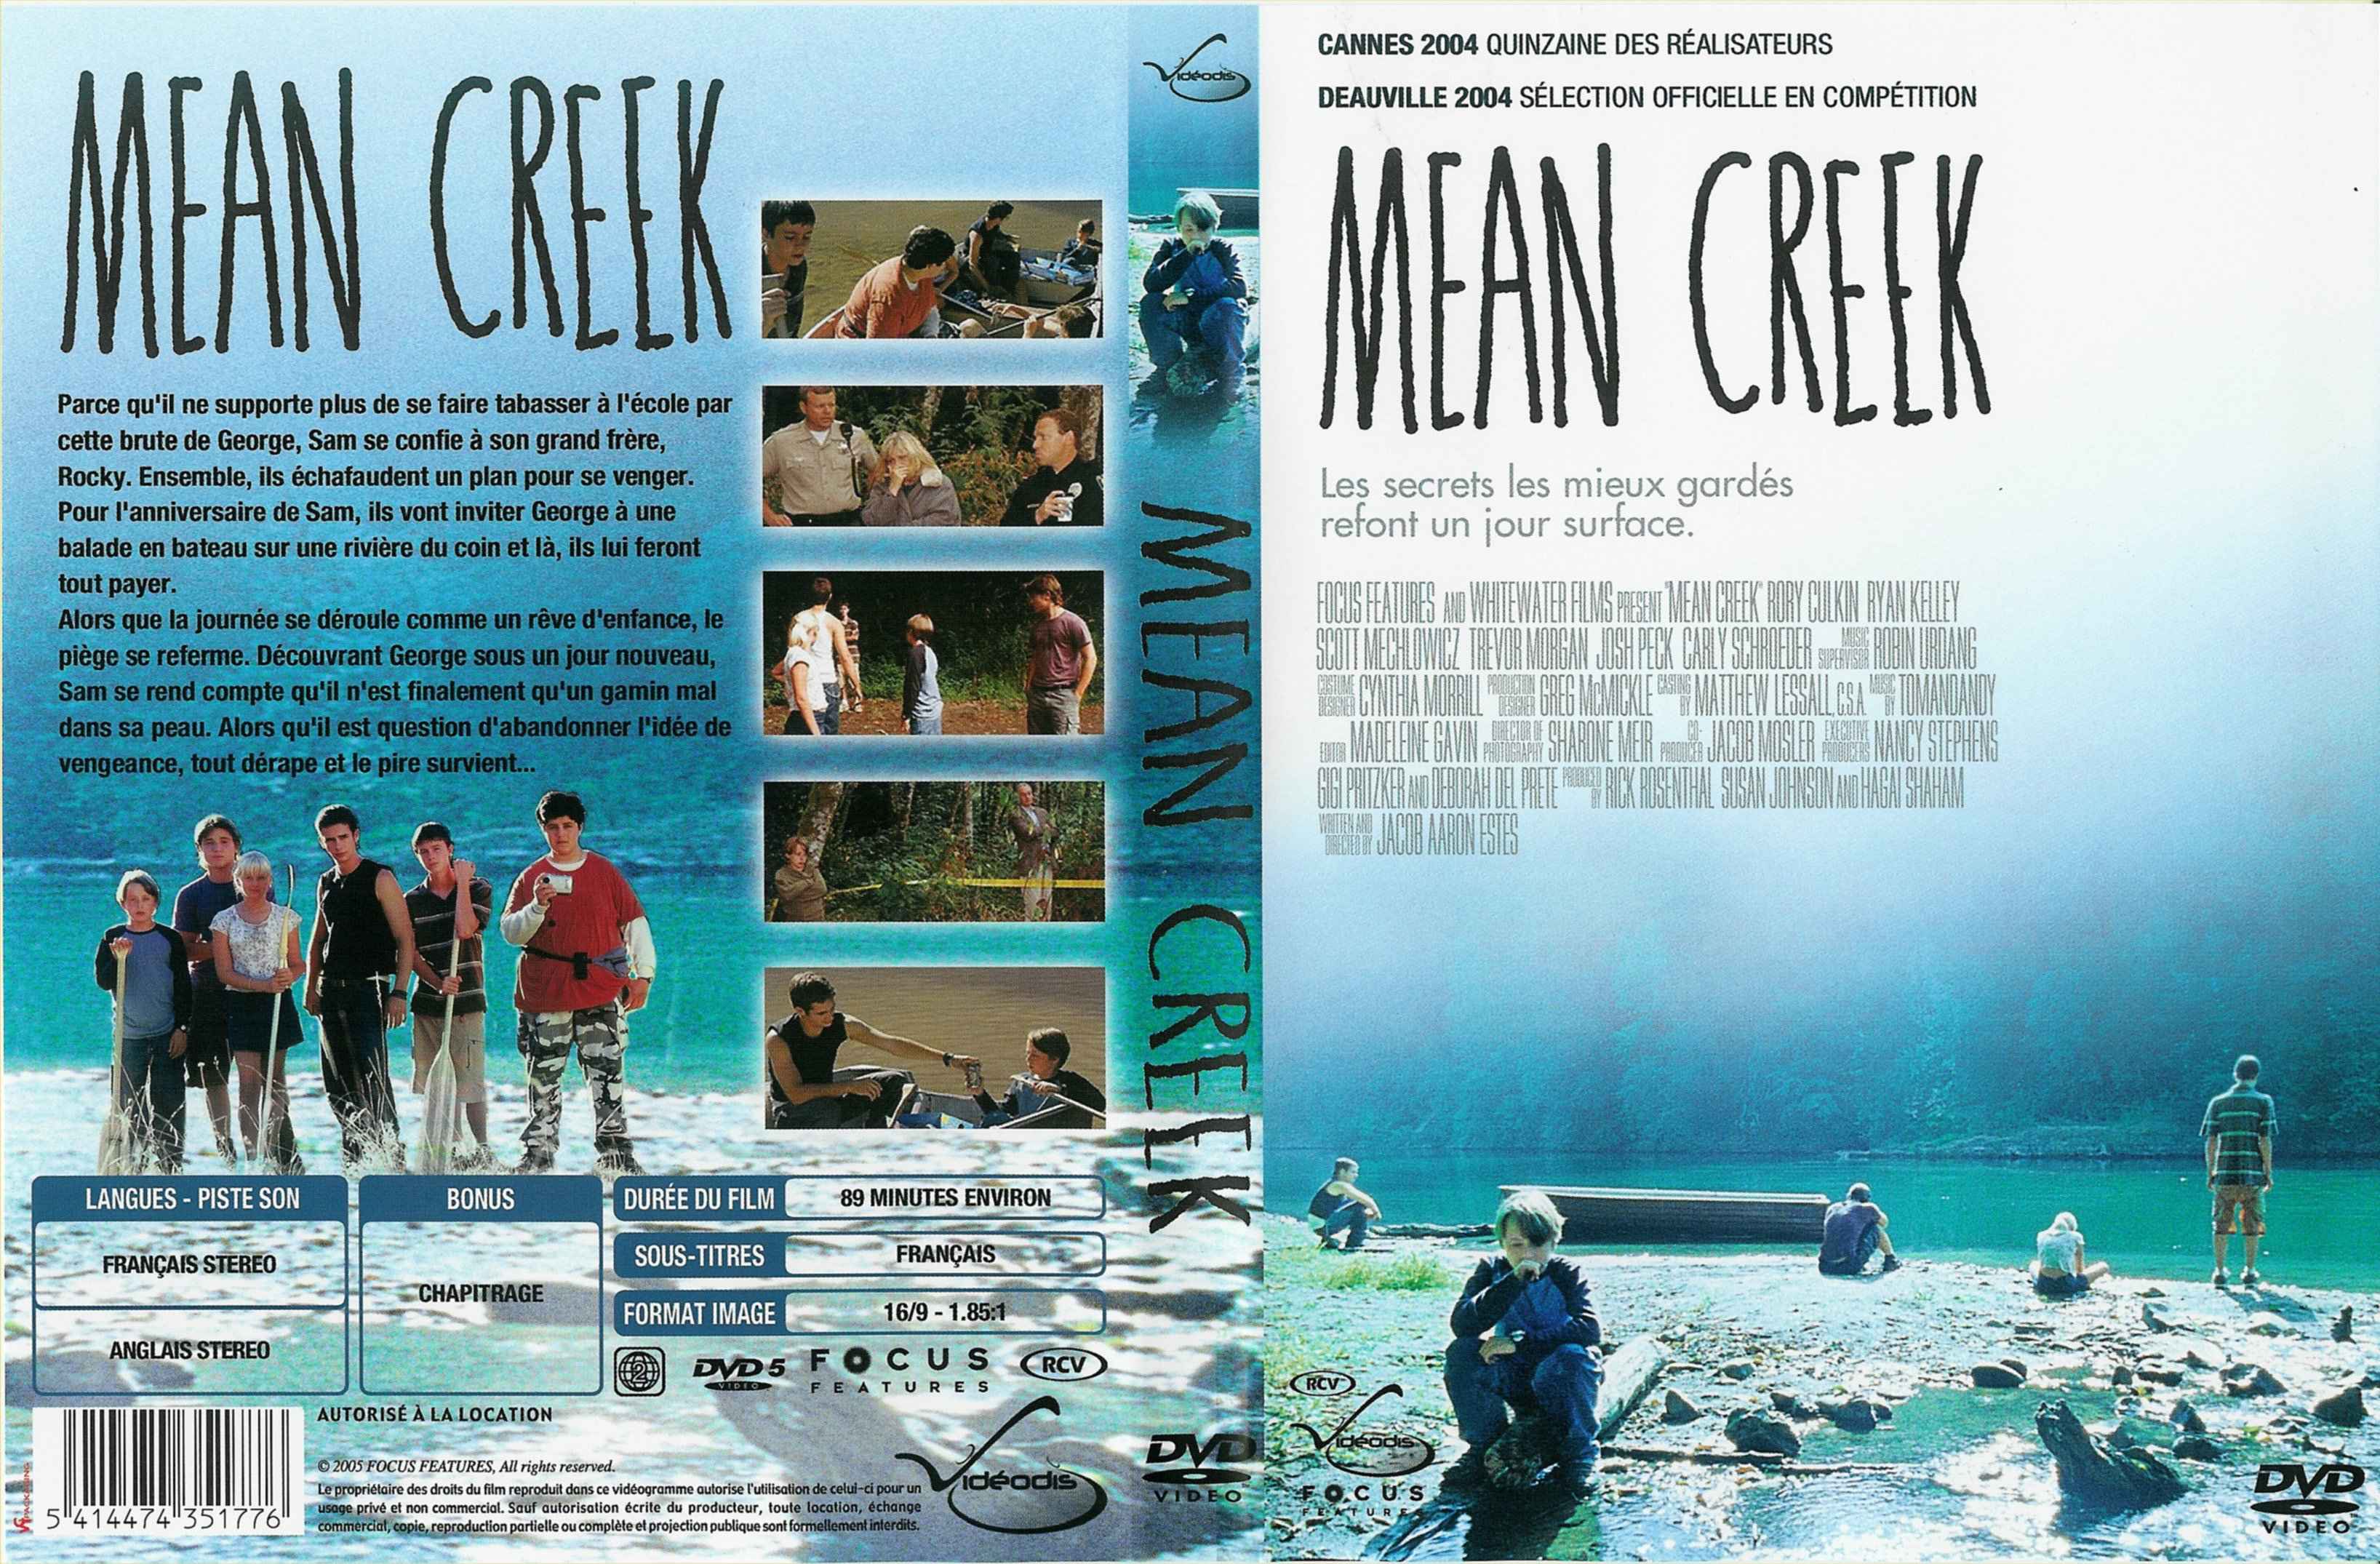 Jaquette DVD Mean Creek